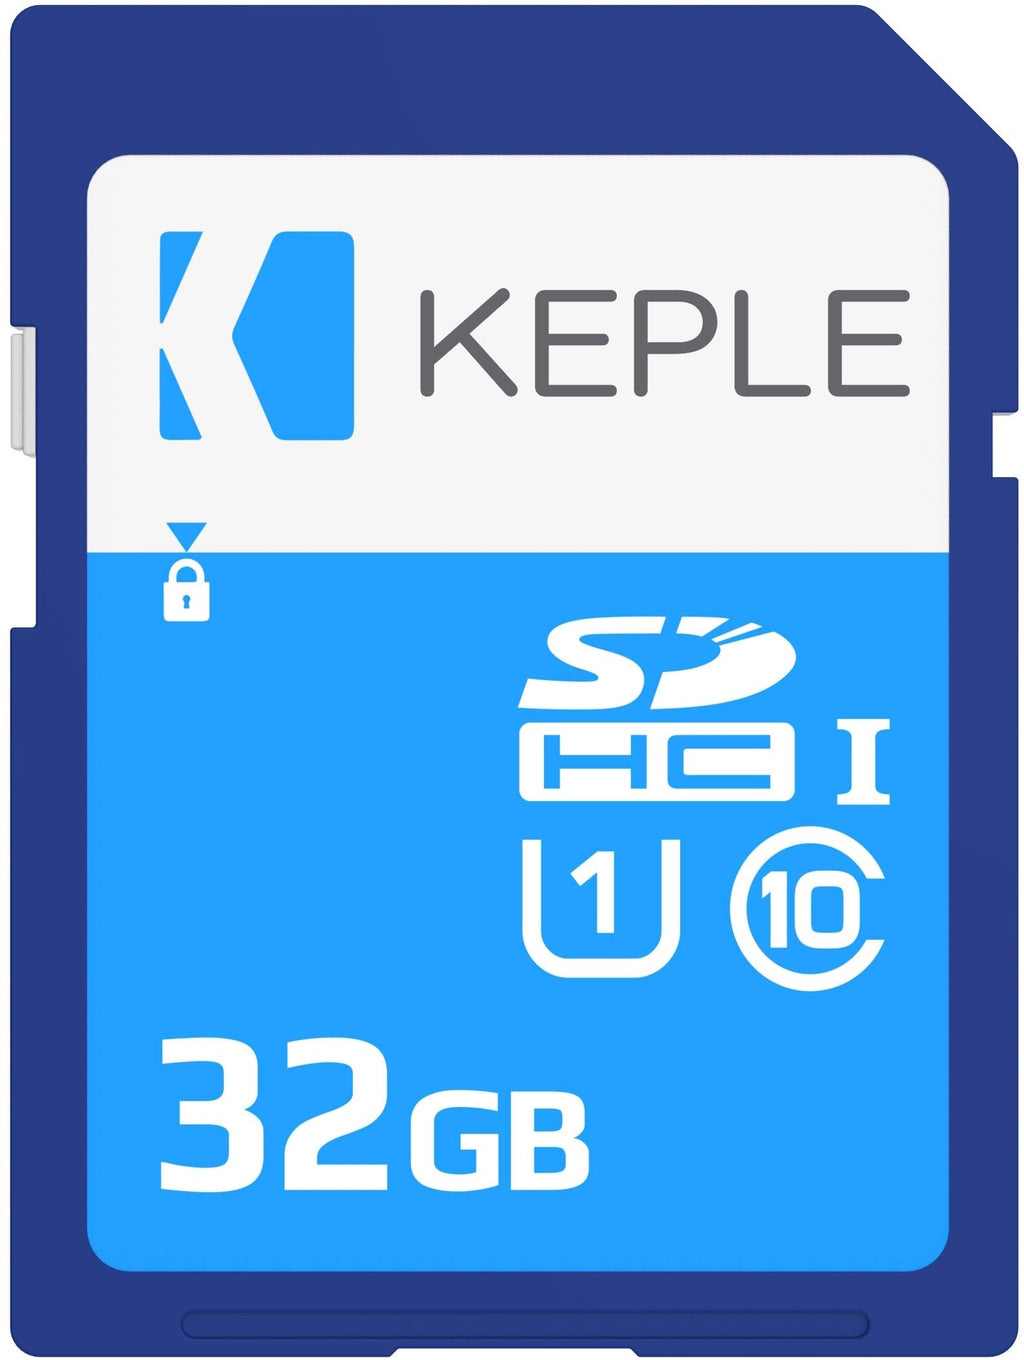 [Australia - AusPower] - 32GB SD Memory Card | SD Card Compatible with Pentax Optio VS20, LS465, K-01, K-30, X-5, K-5 Iis, Q10, K-5 II, MX-1, WG-10, WG-3, Efina, K-500, Q7, K-3 DSLR Camera | 32 GB 32GB 